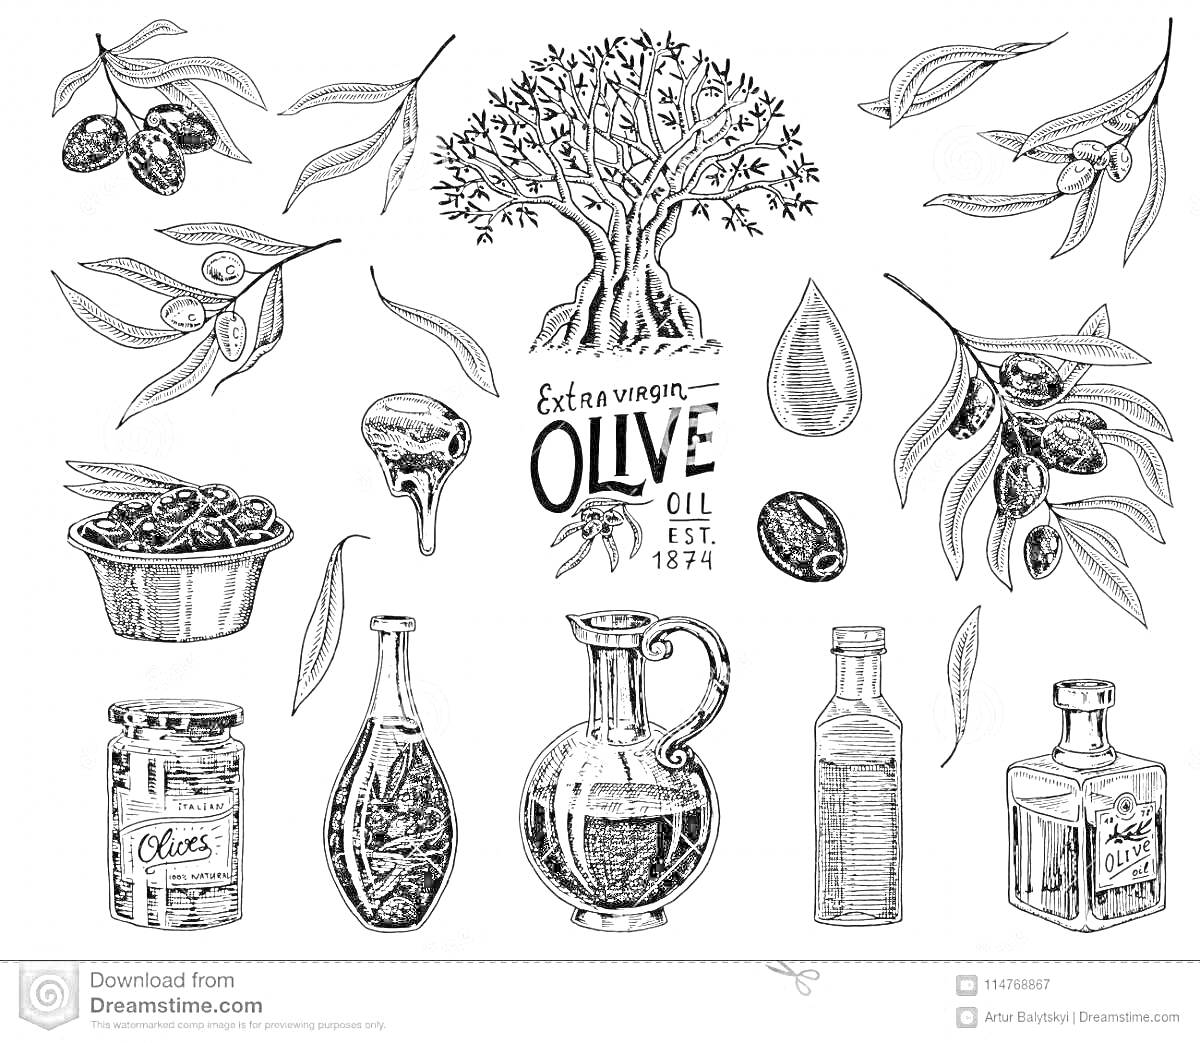 Раскраска Растительное масло - Оливковое дерево, капля масла, оливковое масло в бутылках и банках, оливки на ветвях, миска с оливками, оливки